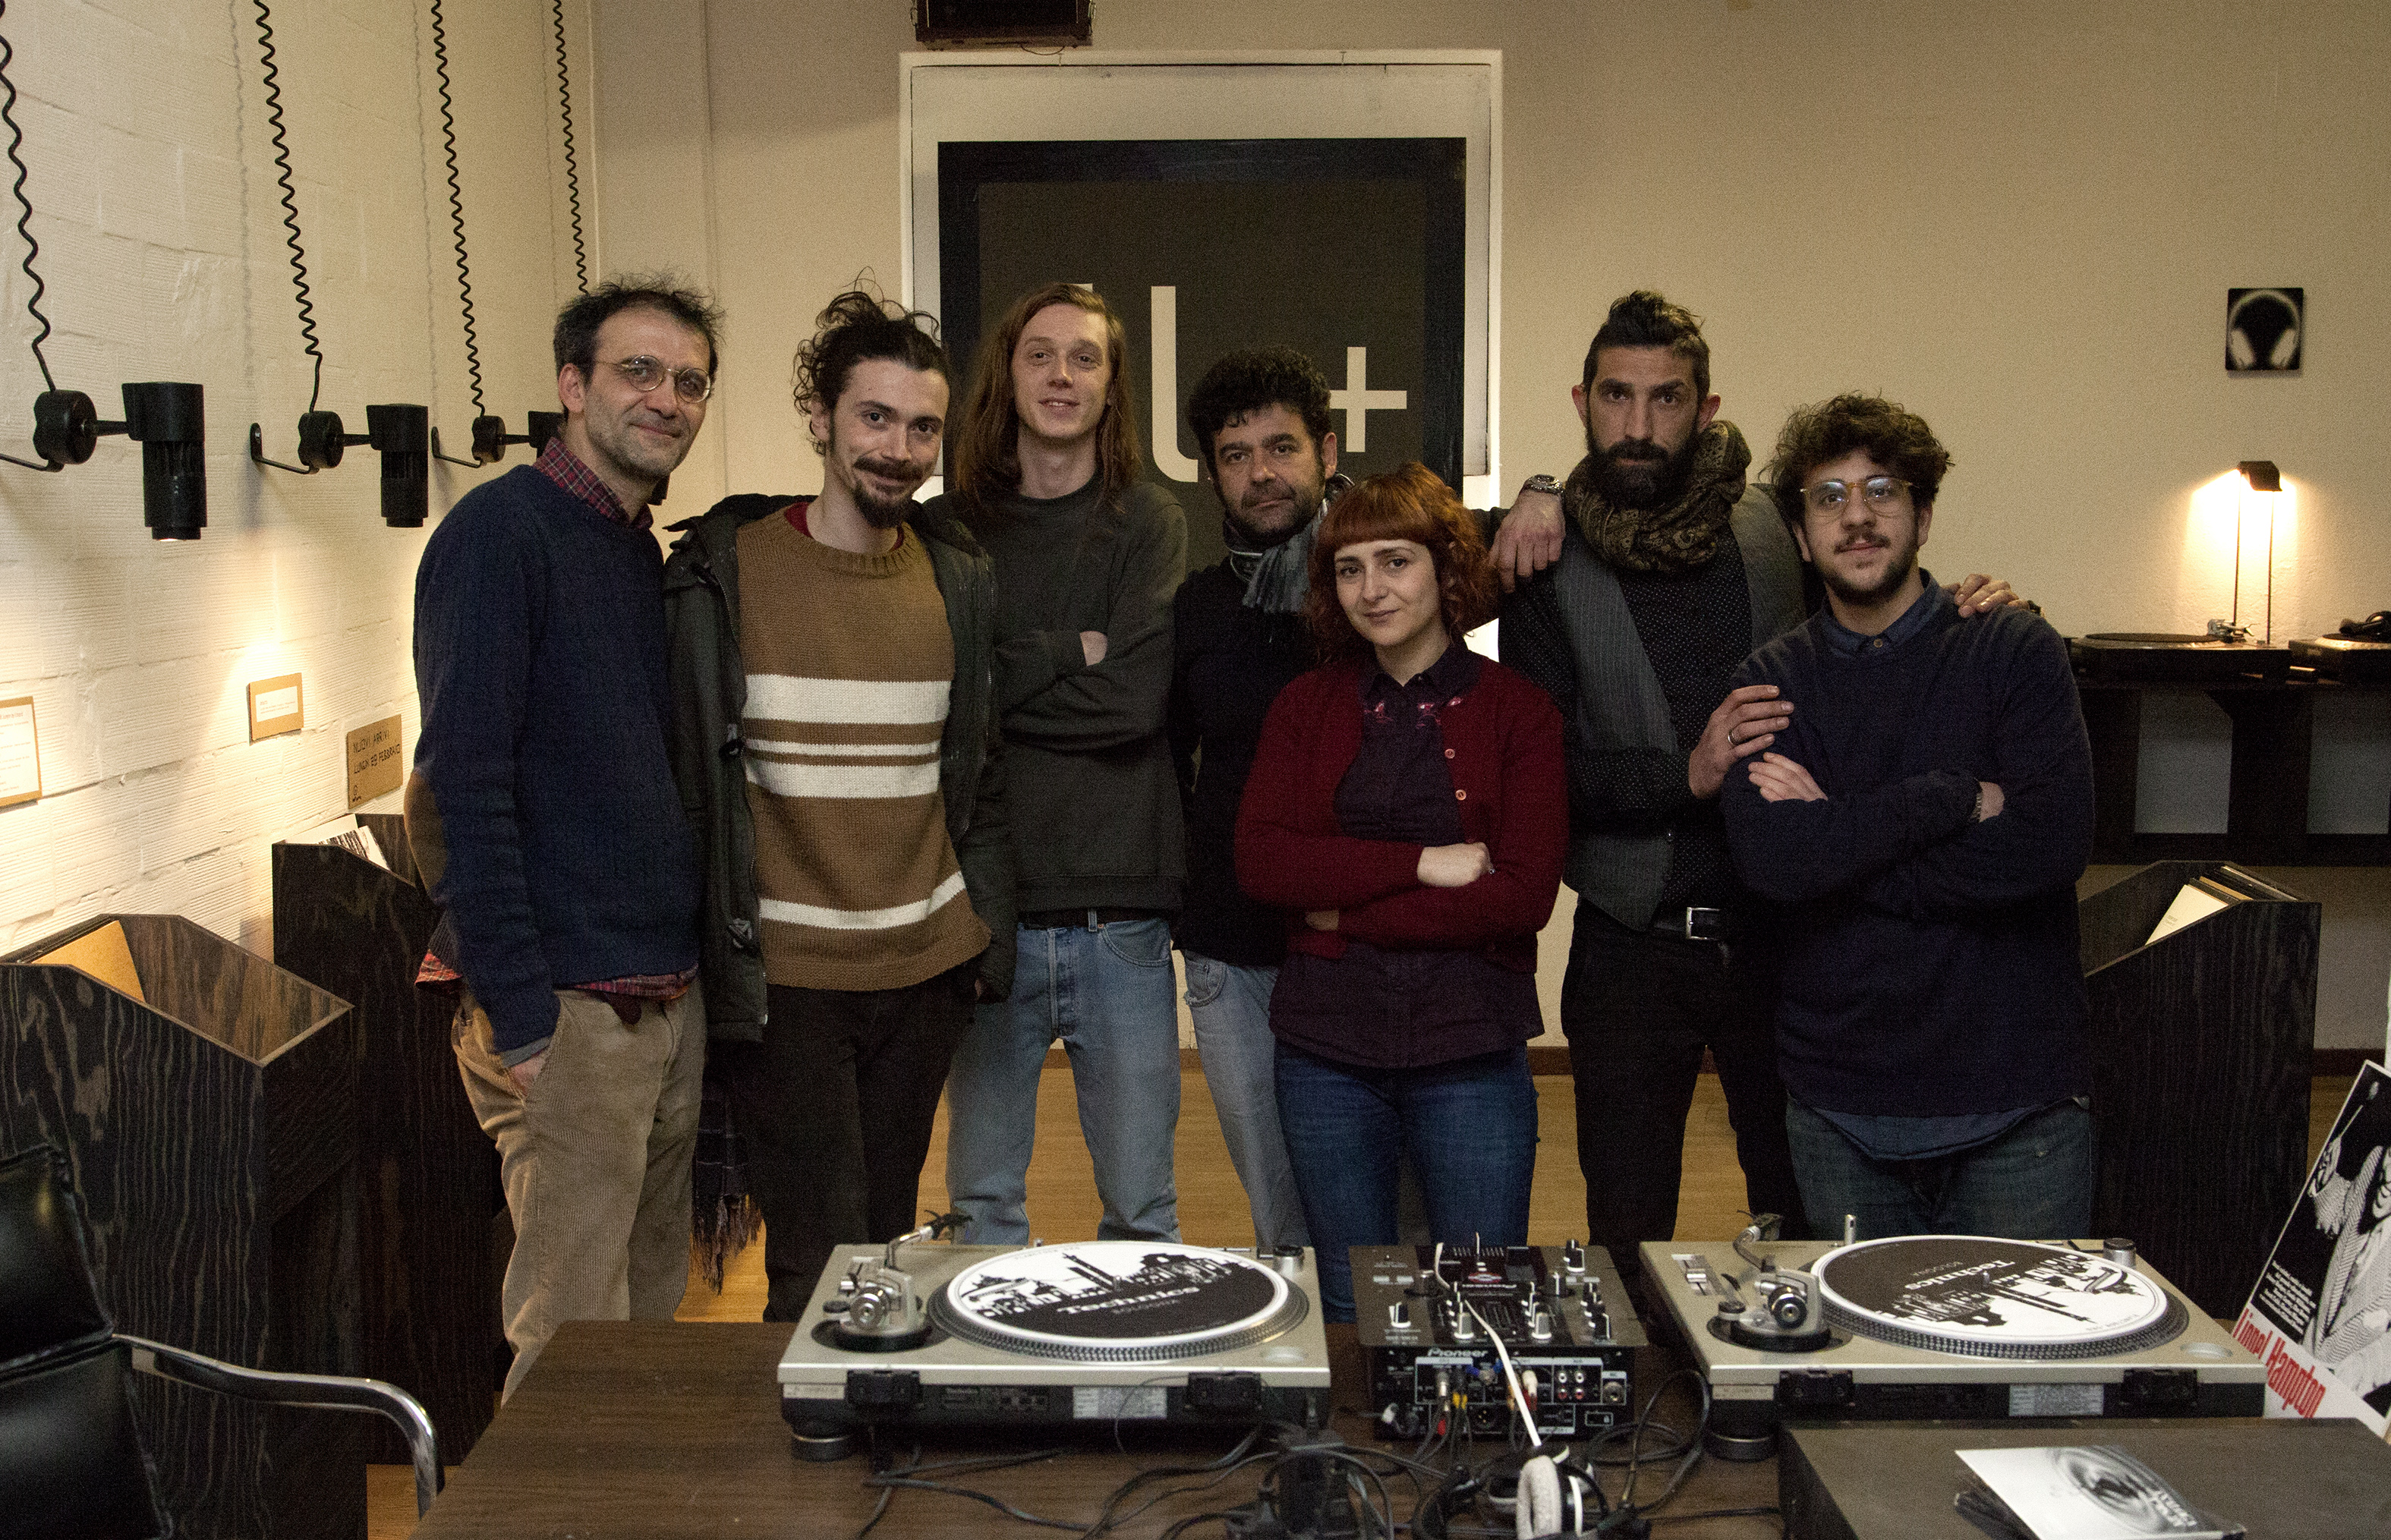 Lo staff di SoundLab. Da sinistra a destra: Giovanni Maraschini, Alberto Irrera, Gianluca Ridolfi, Edoardo Podo, Daniela Guccini, Davide Crucitti, Edoardo Cutrino.